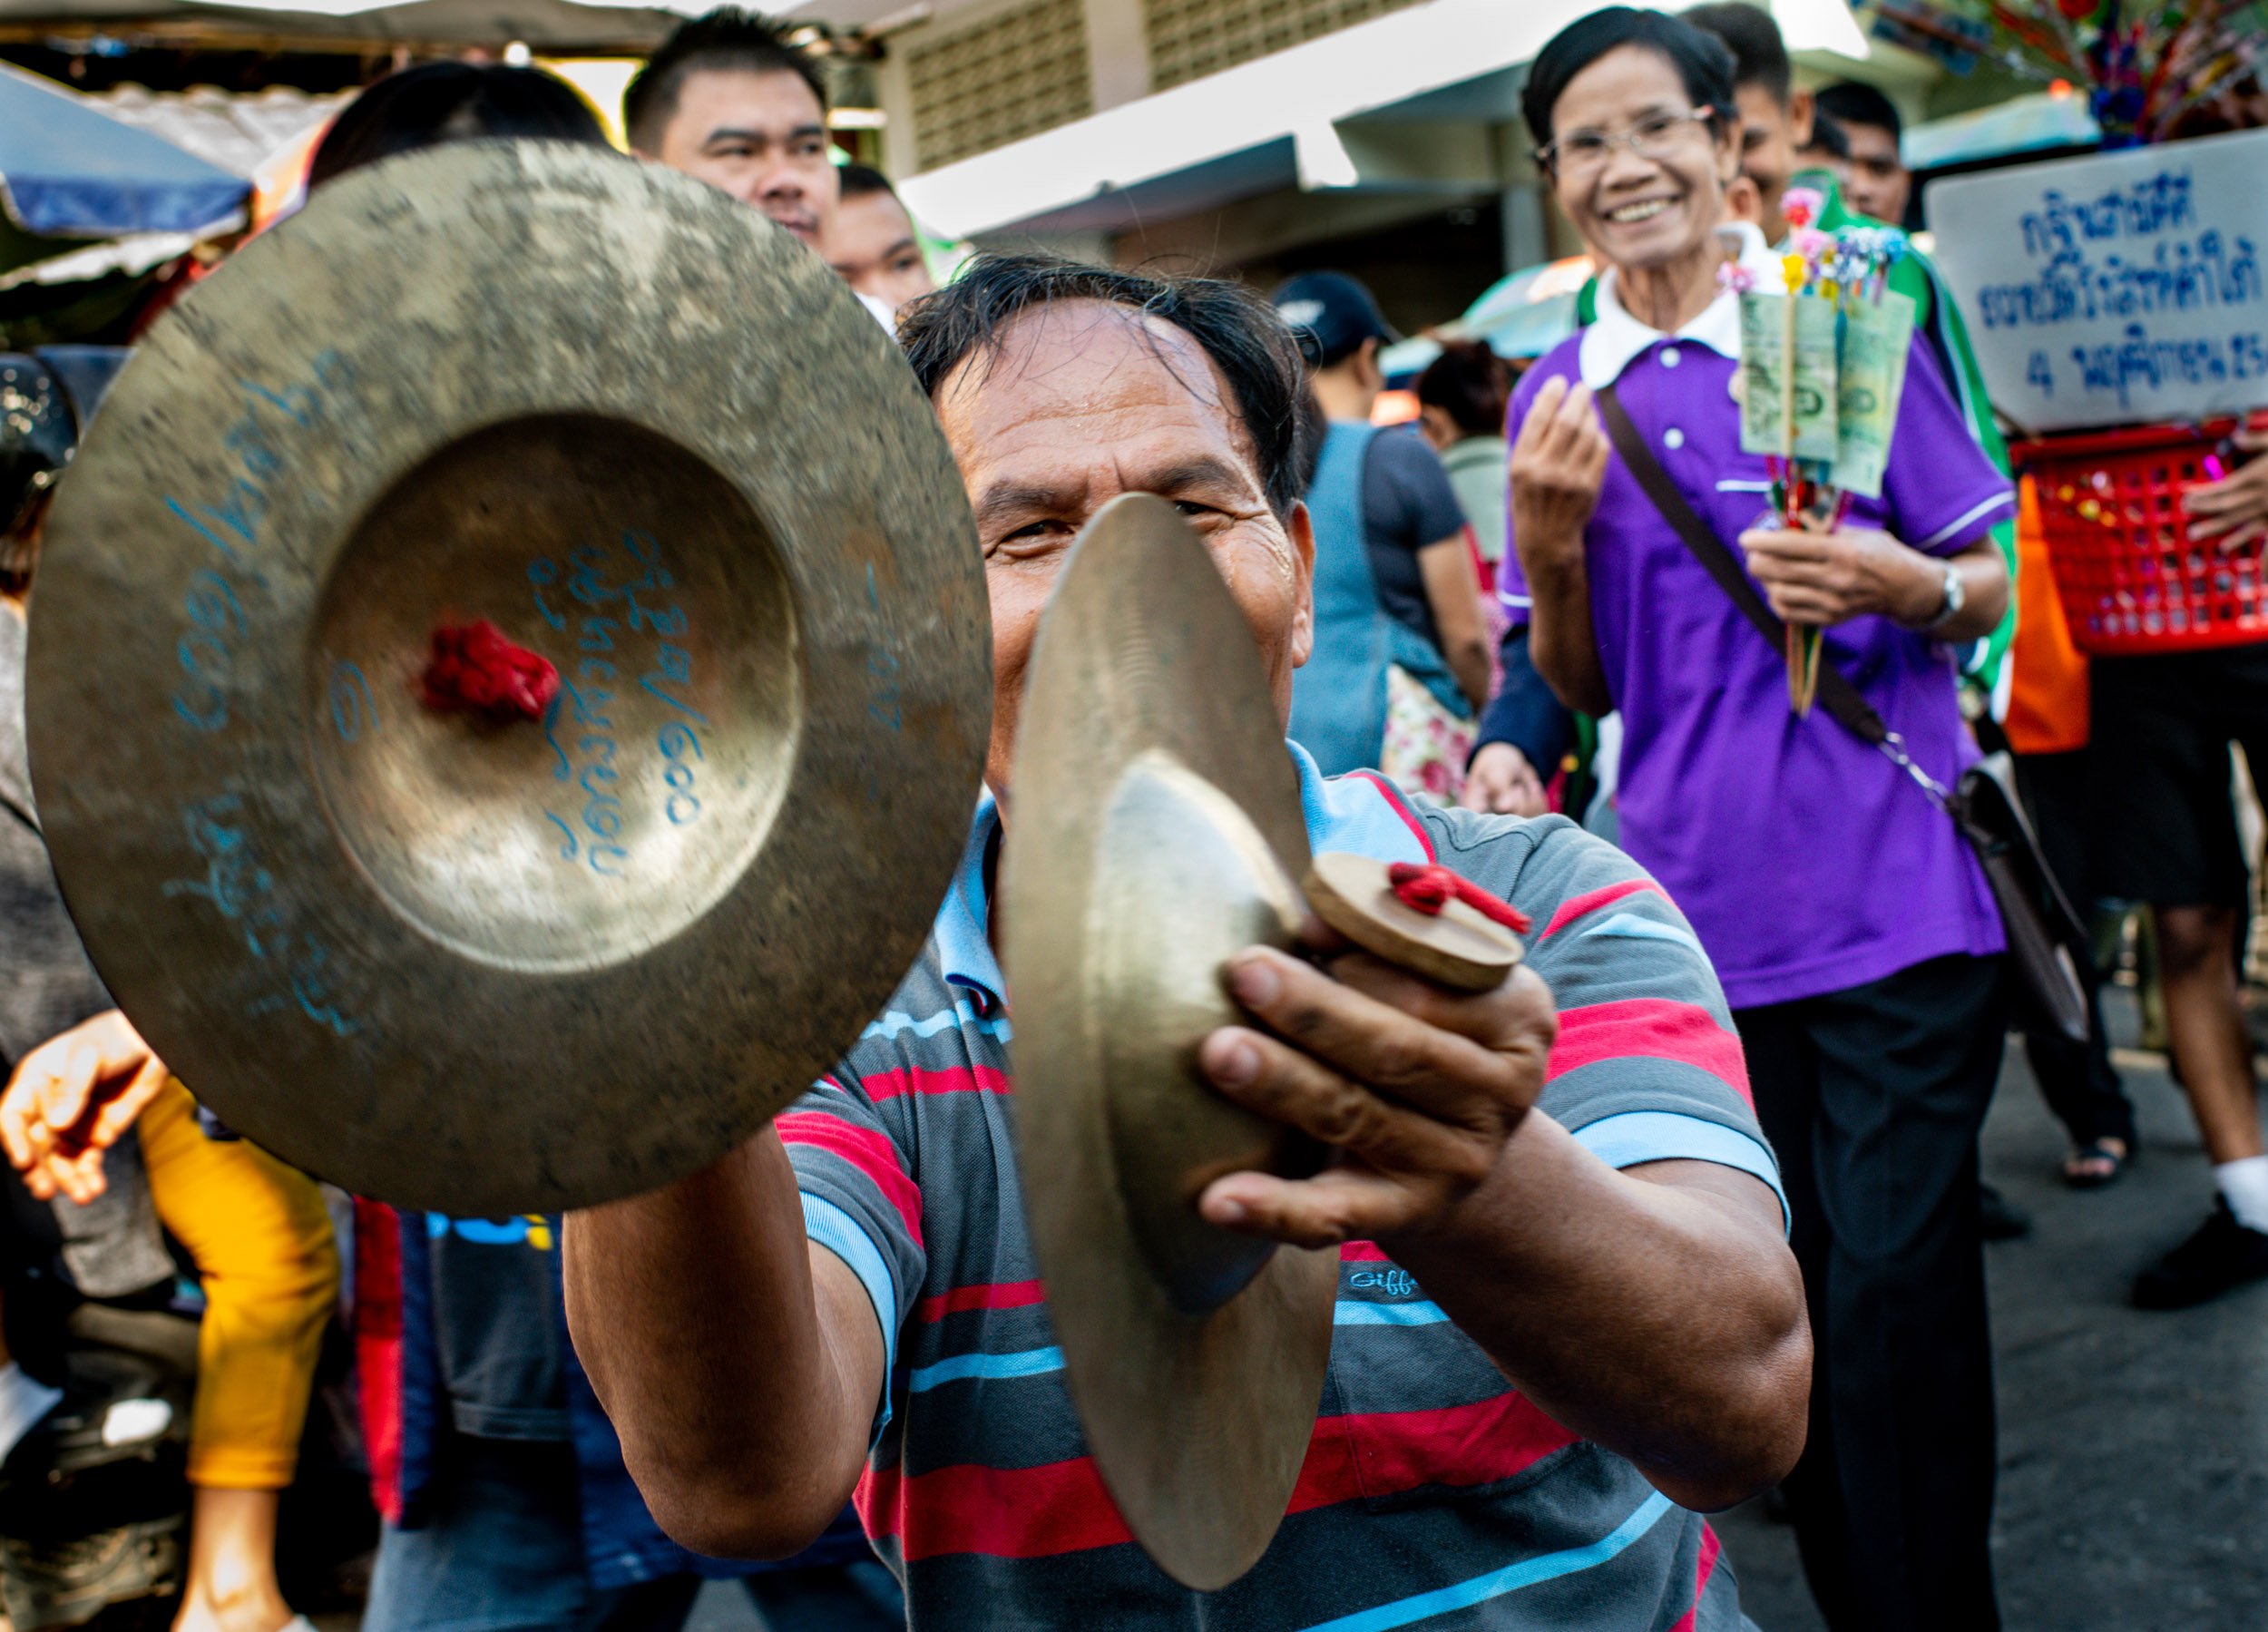 Street musicians at Muang Mai Market, Thailand. © Kevin Landwer-Johan